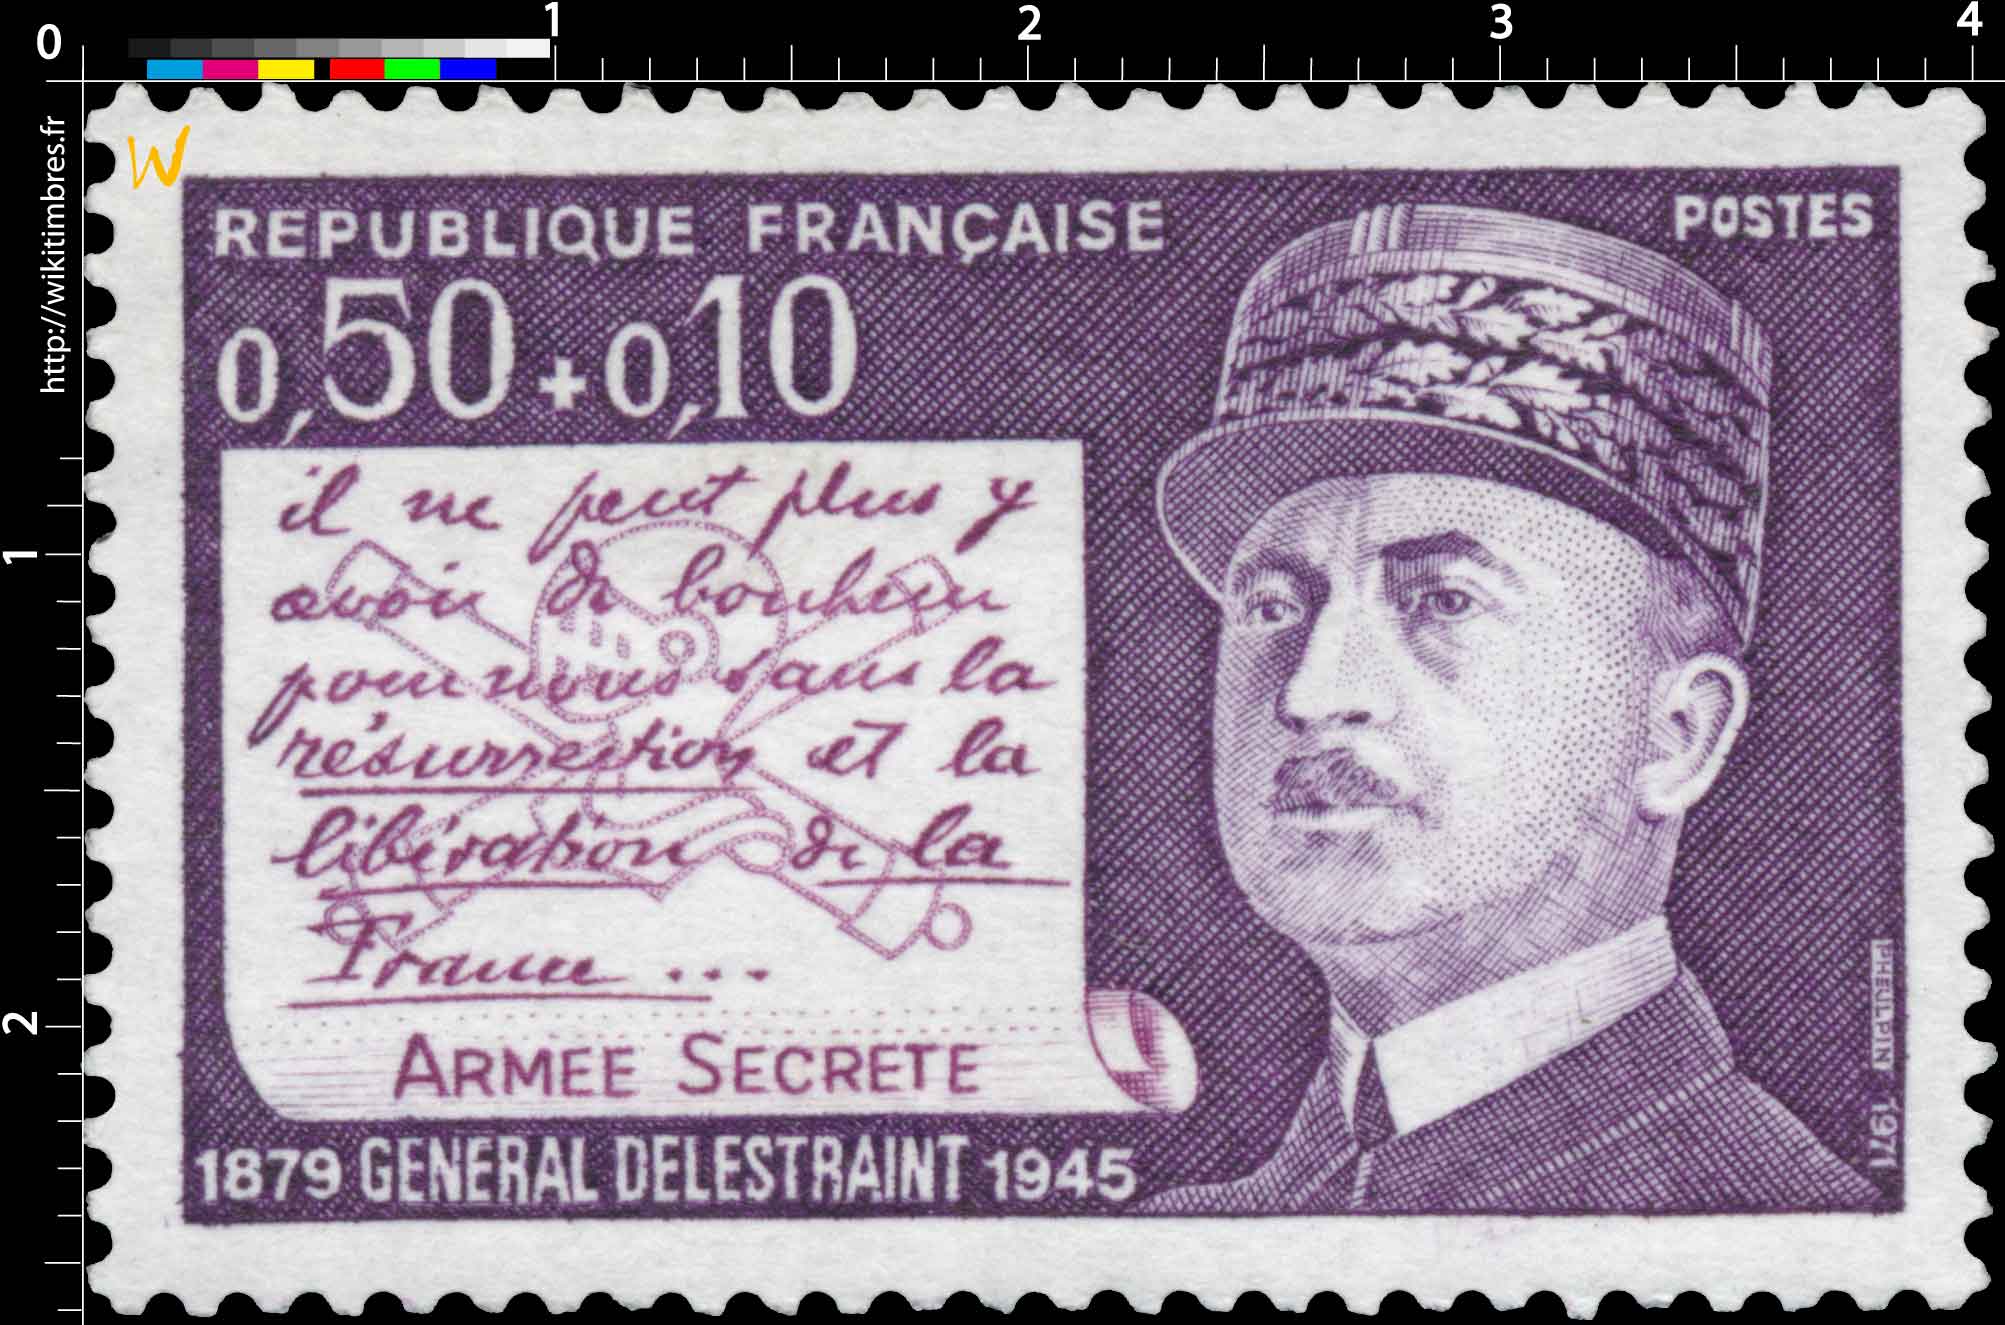 1971 GÉNÉRAL DELESTRAINT 1879-1945 ARMÉE SECRÈTE